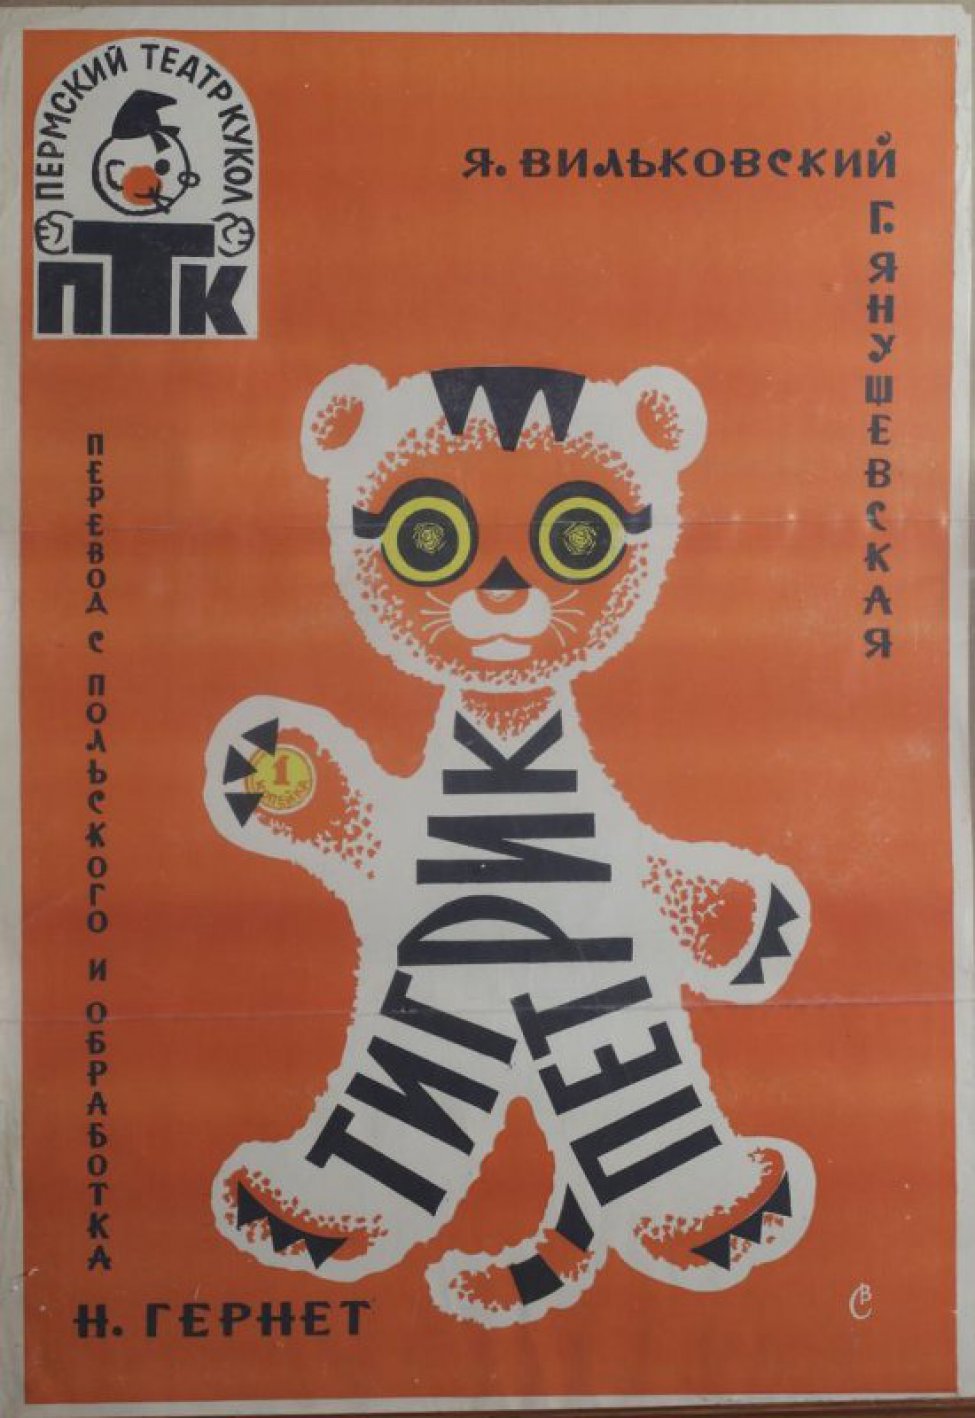 На оранжевом фоне - стилизованное изображение тигренка, стоящего на задних лапах. Вверху слева - логотип Пермского театра кукол.